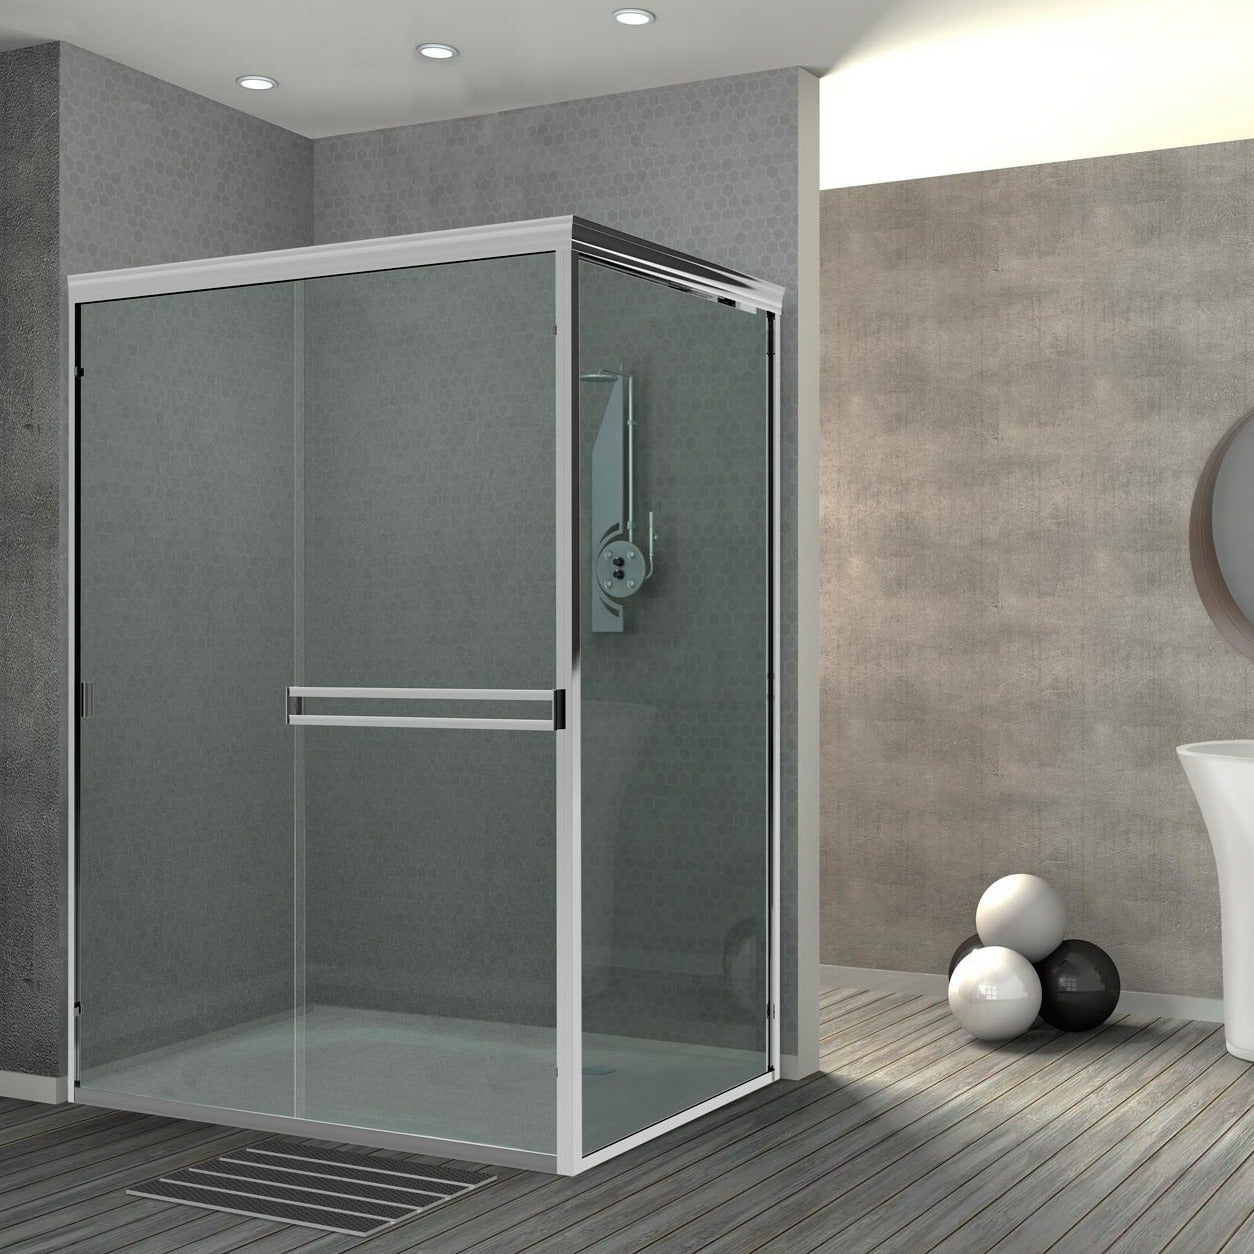 How to Clean Between Sliding Shower Doors